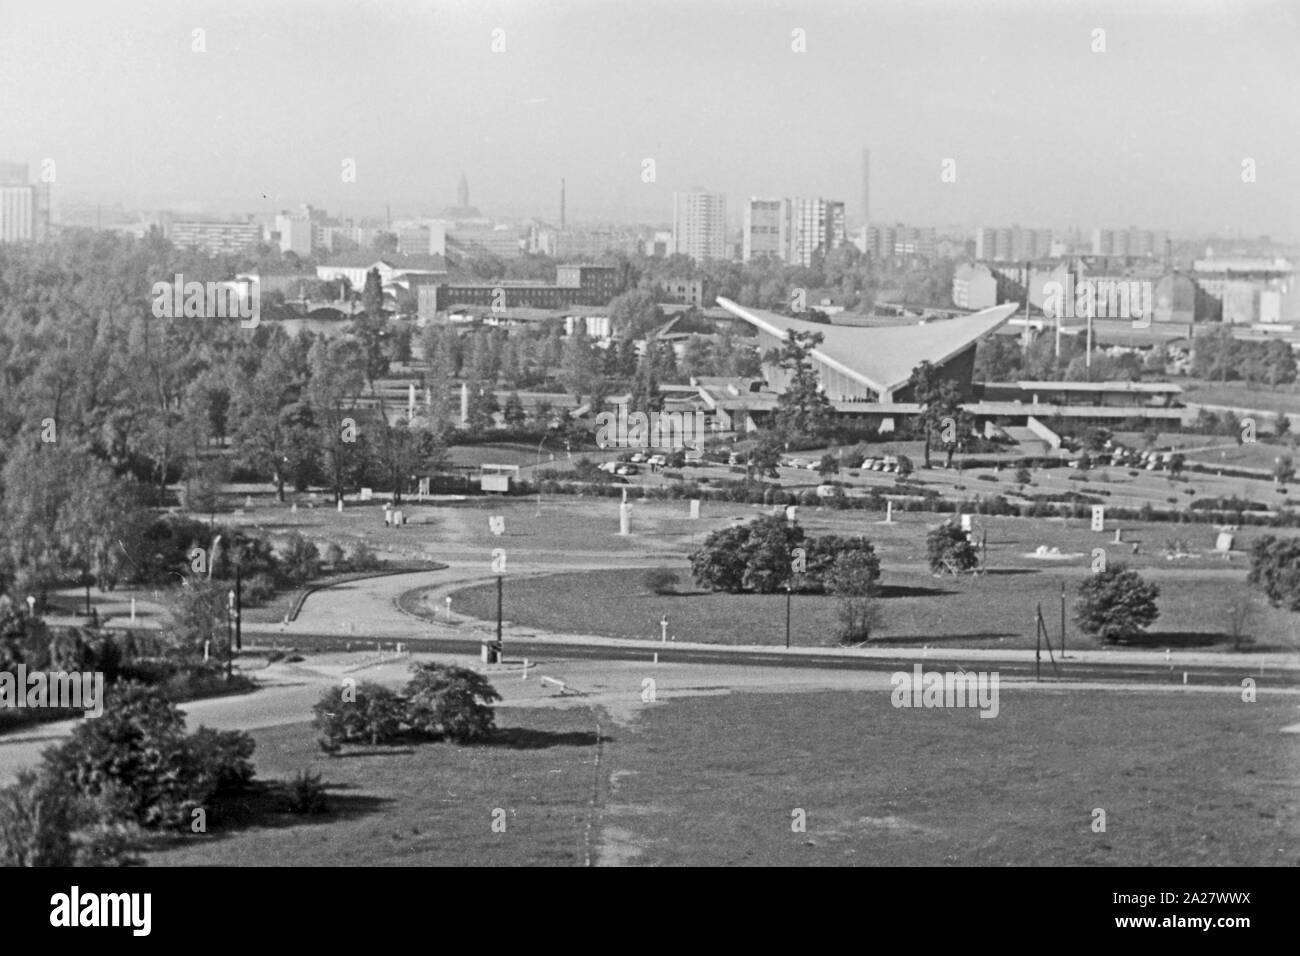 Blick in die Kongresshalle an der John Foster Dulles Allee im Ortsteil Tiergarten in Berlin, Deutschland 1962. Kongress- und Veranstaltungshalle am Tiergarten in Berlin, Deutschland 1962. Stockfoto